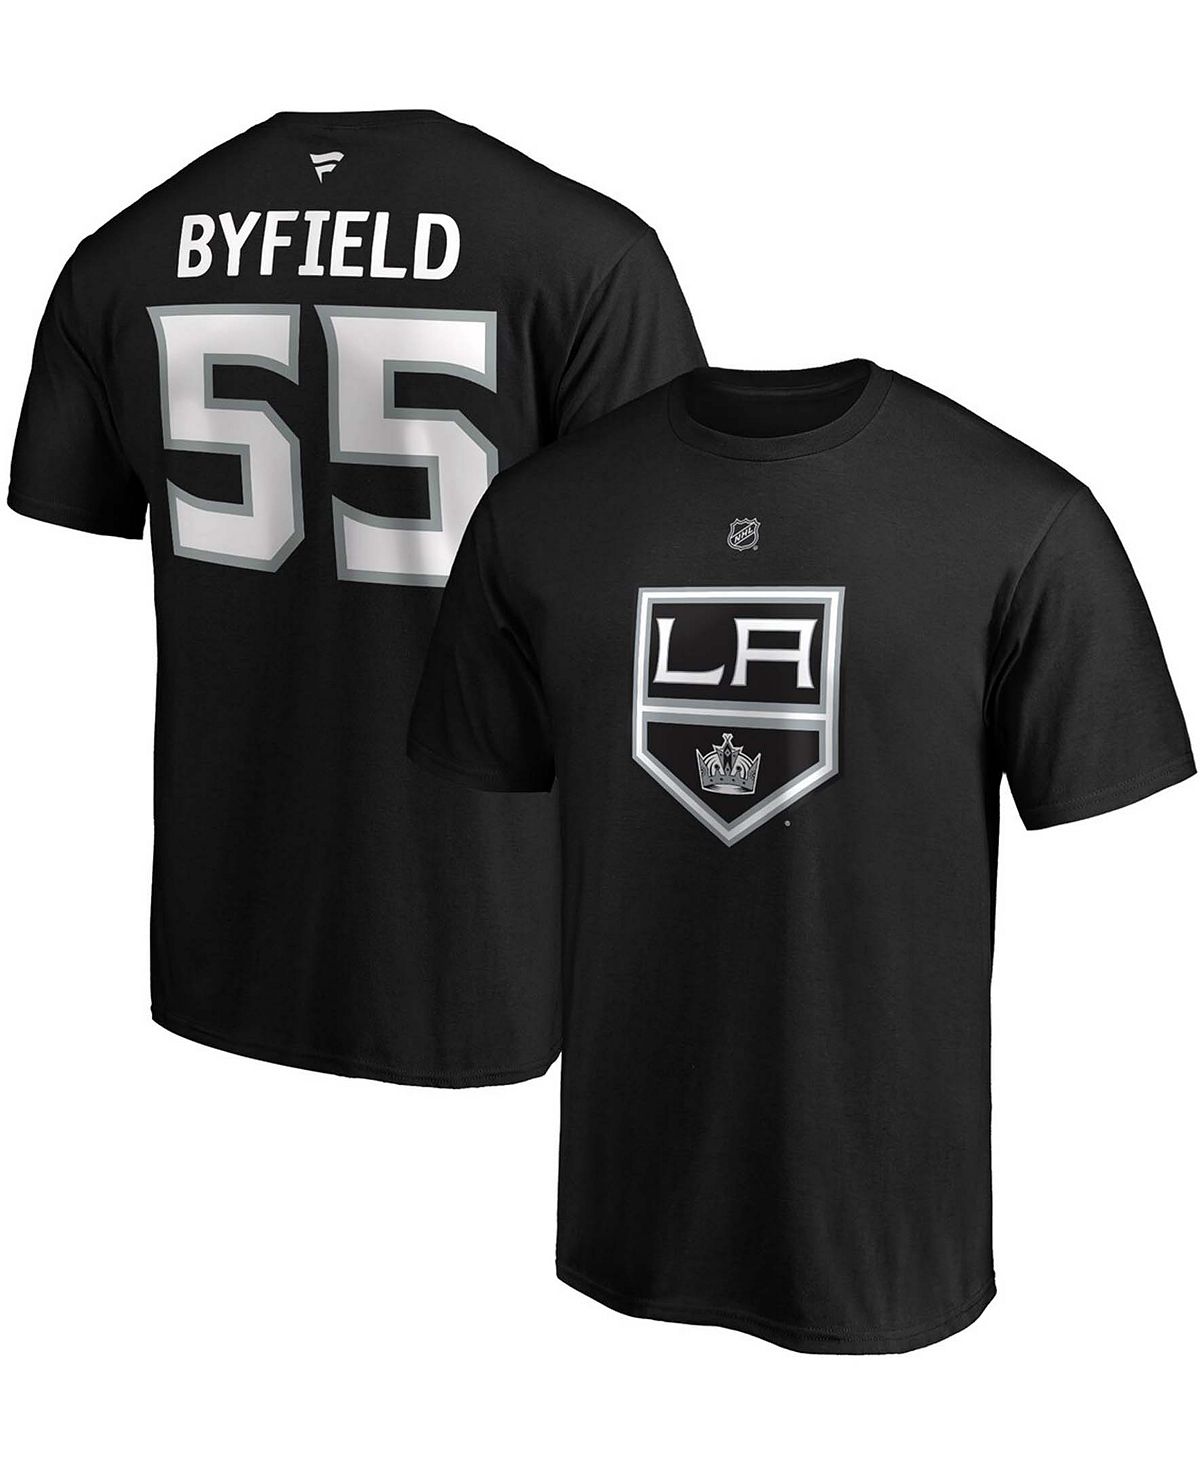 Мужская футболка quinton byfield black los angeles kings authentic с именем и номером стека Fanatics, черный